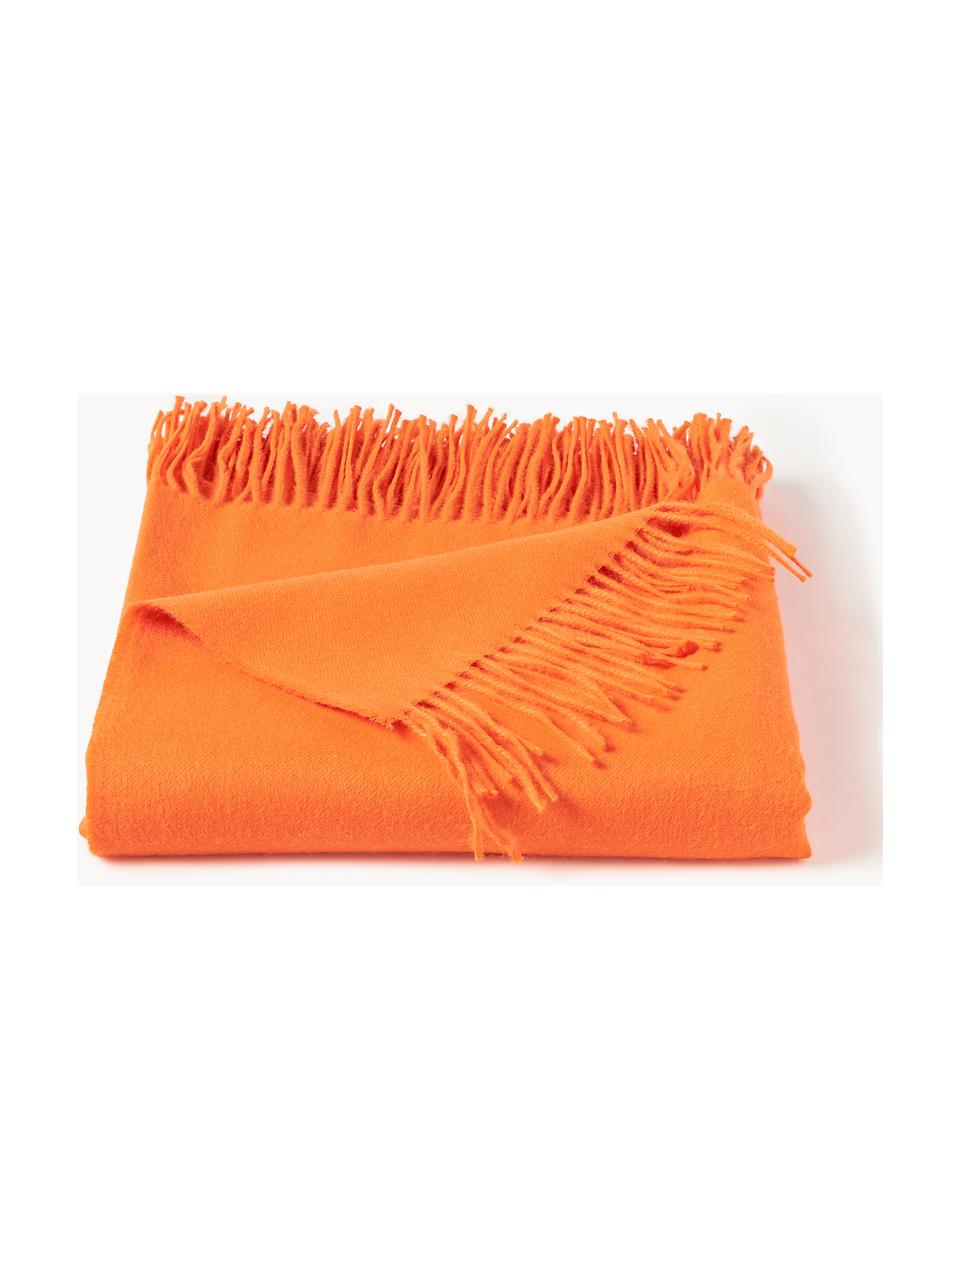 Decke Luxury aus Babyalpaka-Wolle, 100 % Baby-Alpakawolle

Diese Decke ist aus wunderbar weicher, hochwertiger Babyalpaka-Wolle gewebt. Sie schmeichelt der Haut und spendet wohlige Wärme, ist strapazierfähig aber dennoch leicht und besitzt hervorragende temperaturregulierende Eigenschaften. Dadurch ist diese Decke der perfekte Begleiter für kühle Sommerabende ebenso wie kalte Wintertage., Orange, B 130 x L 200 cm